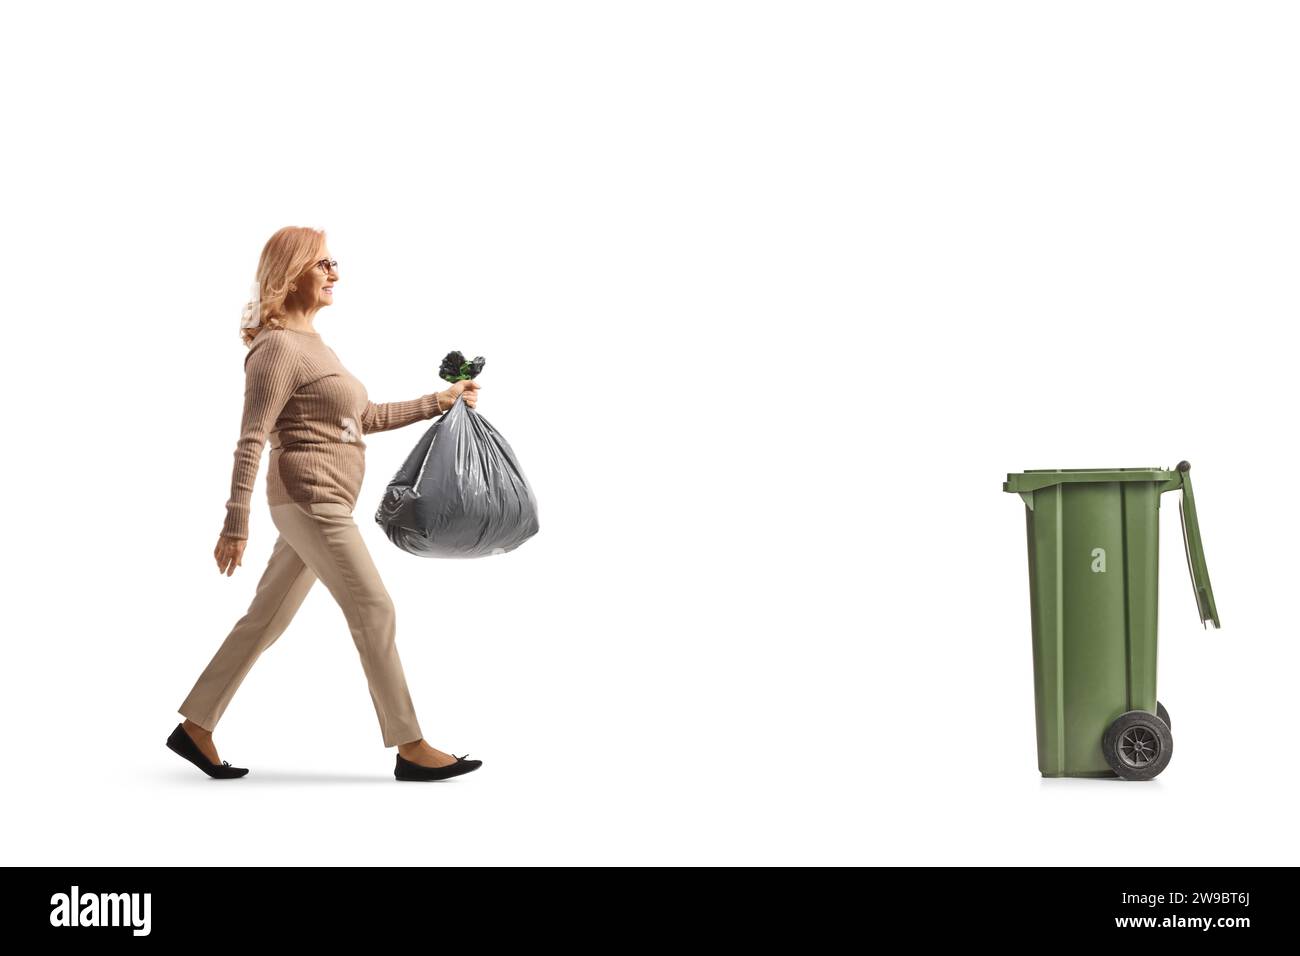 Foto de perfil de longitud completa de una mujer de mediana edad que lleva una bolsa de desechos de plástico y camina hacia un contenedor aislado sobre fondo blanco Foto de stock